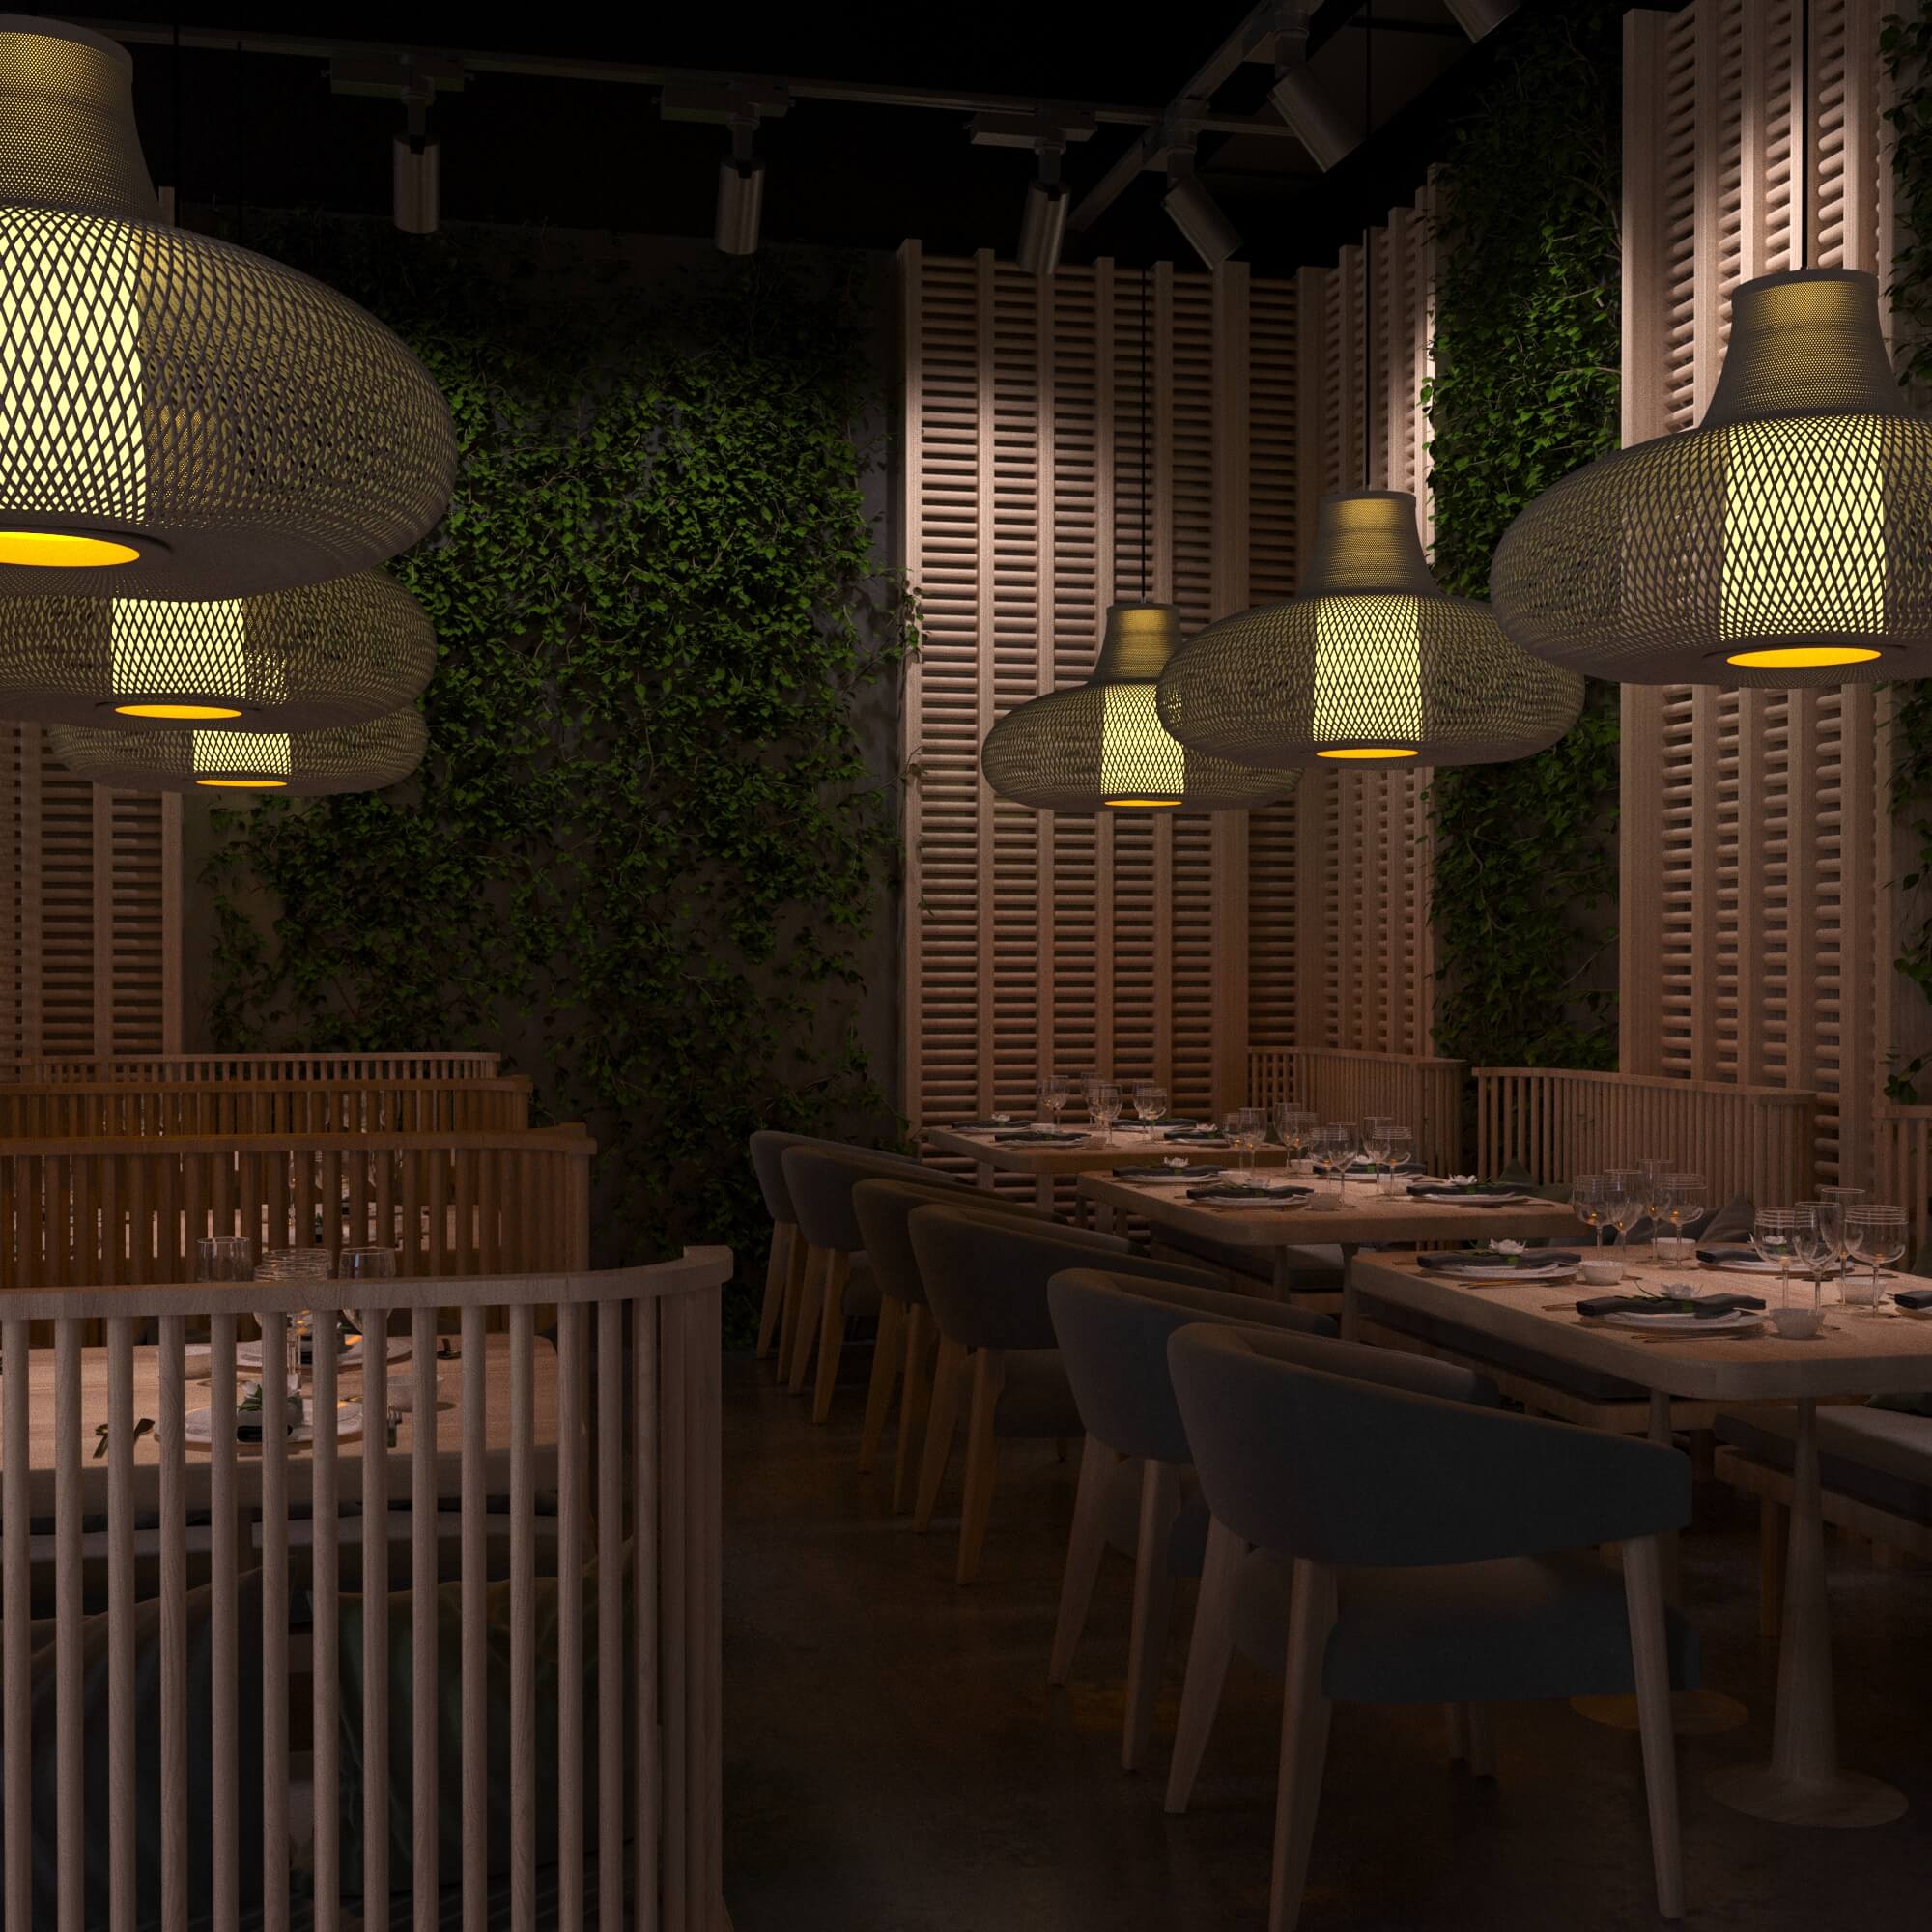 Дизайн интерьера кафе в Самоанском стиле. С использованием натуральных материалов и элементов озеленения стен